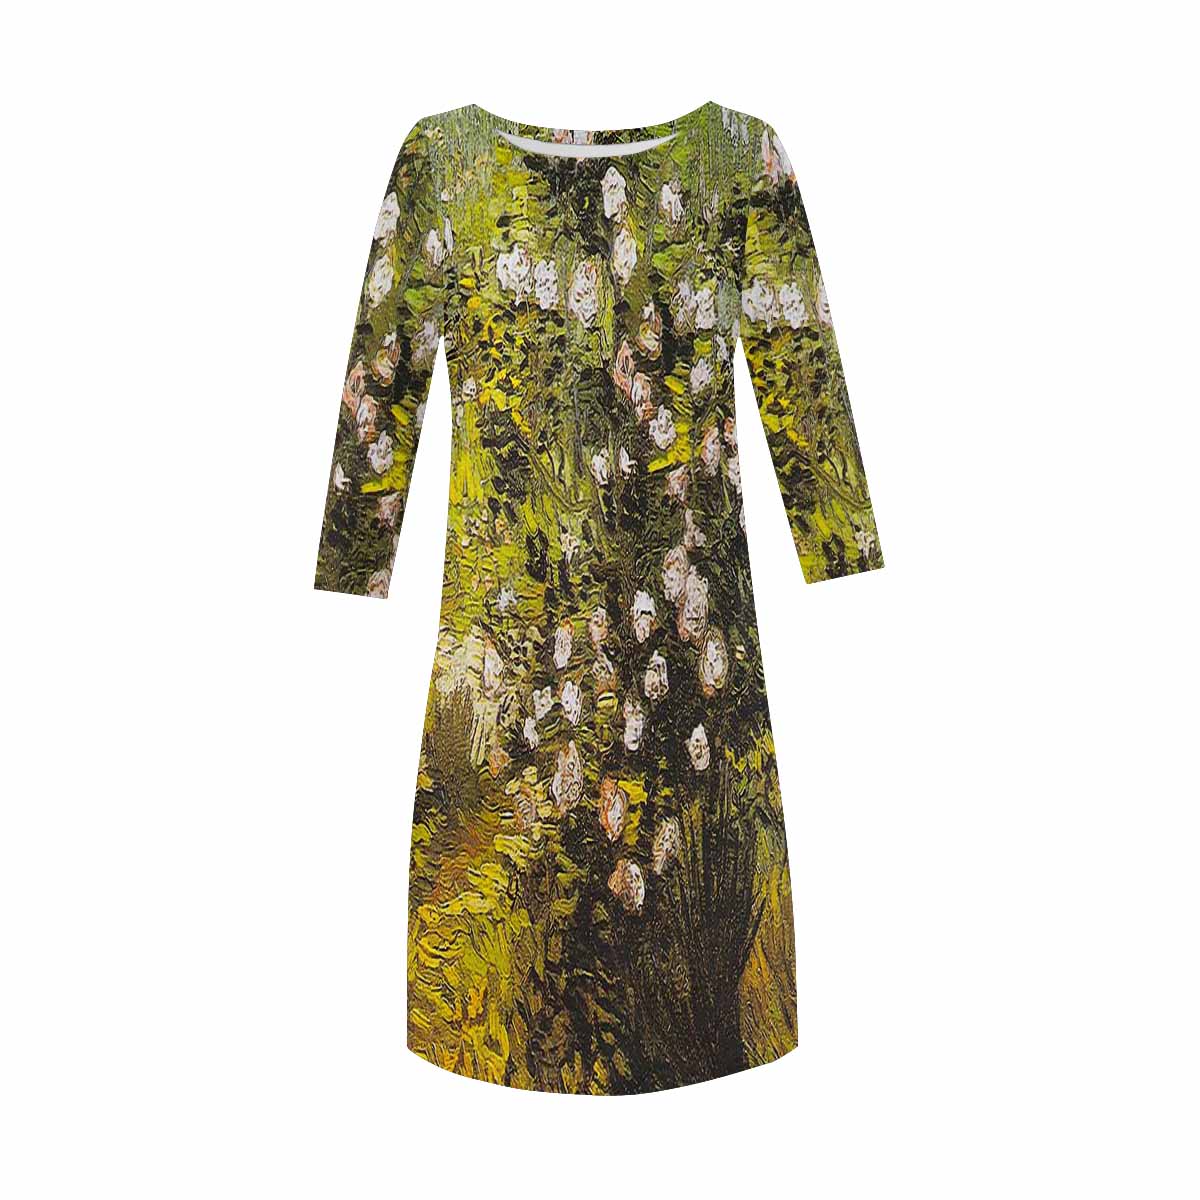 Vintage floral loose dress, model D29532 Design 05